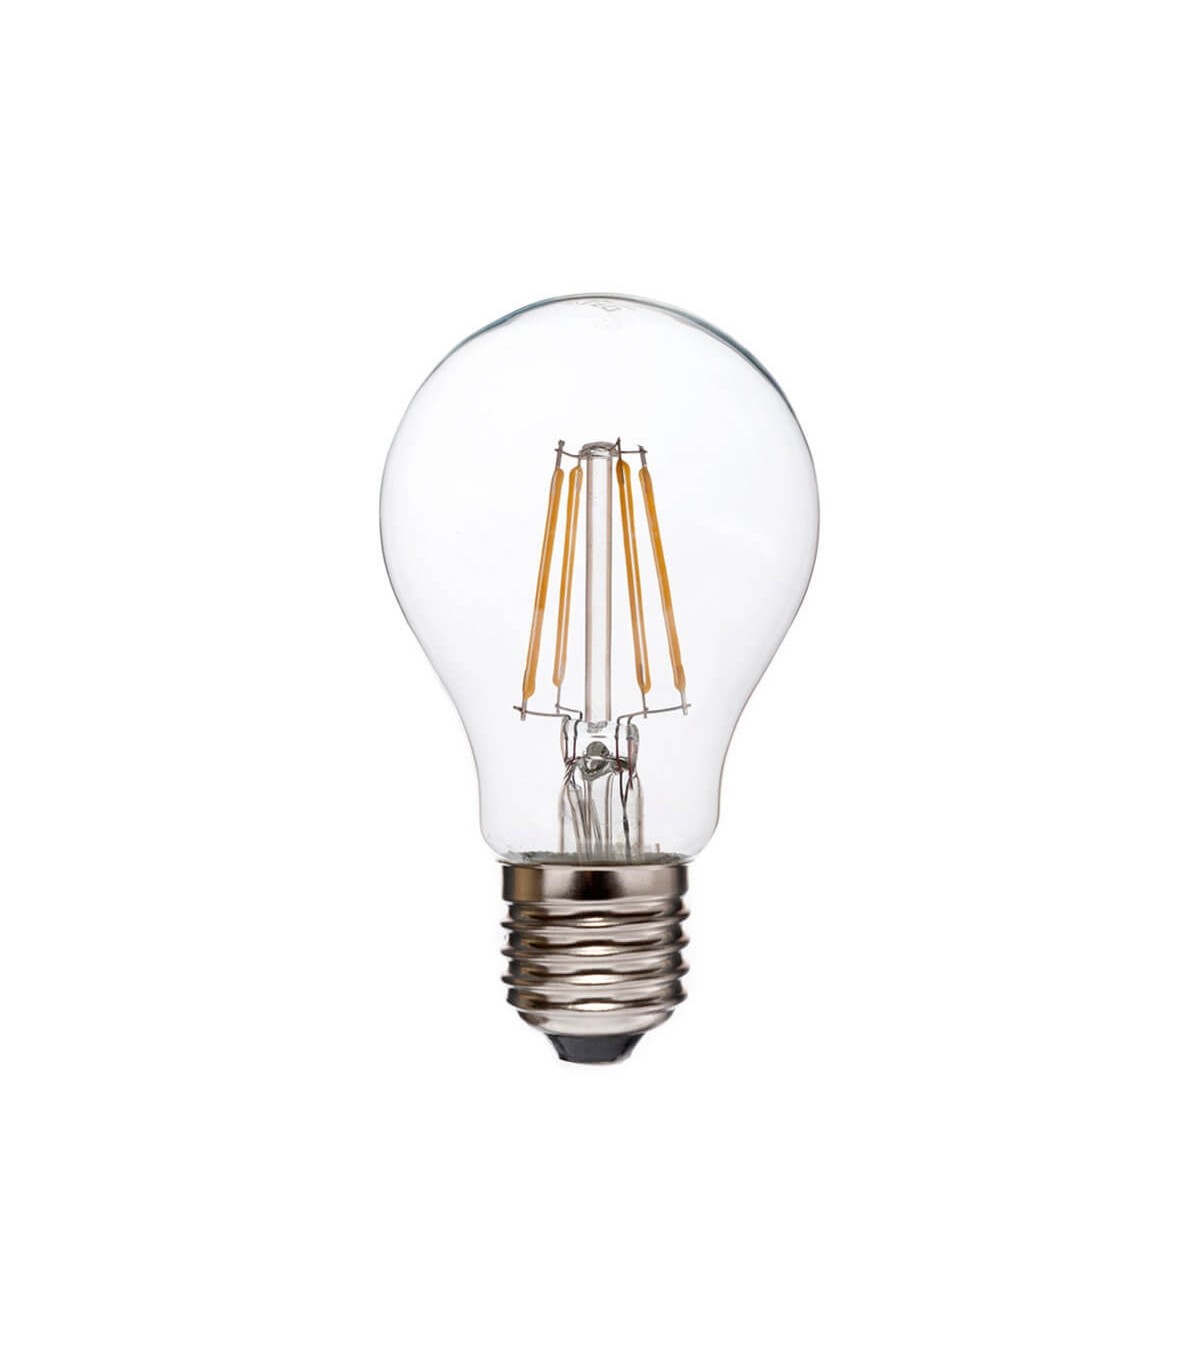 Ampoule LED E27 Retrofit dimmable 12 W = 1521 lumens blanc chaud